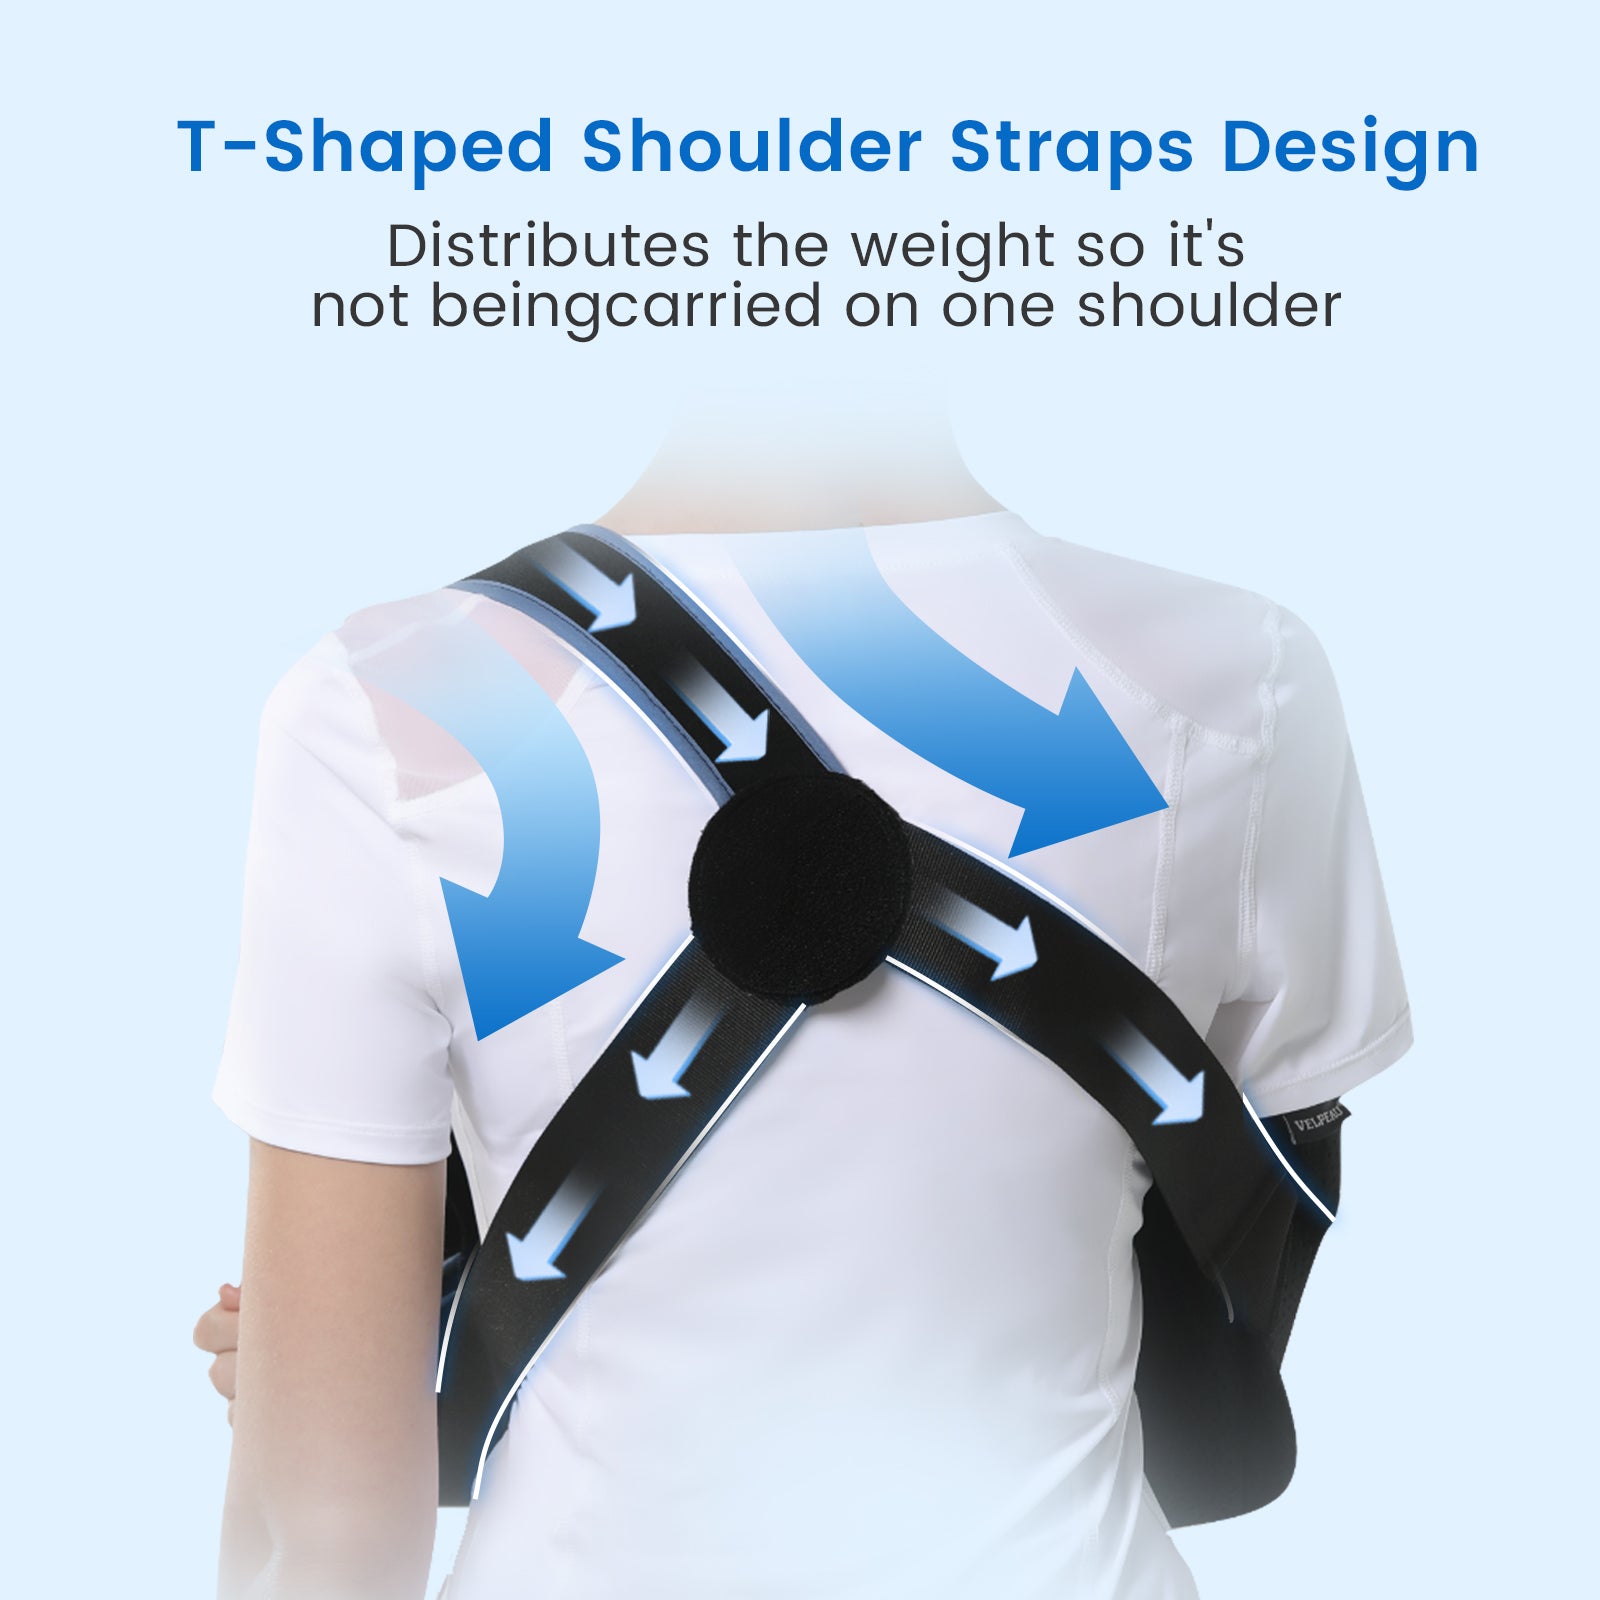 VP0306 VELPEAU Arm Sling Shoulder Immobilizer Comfort